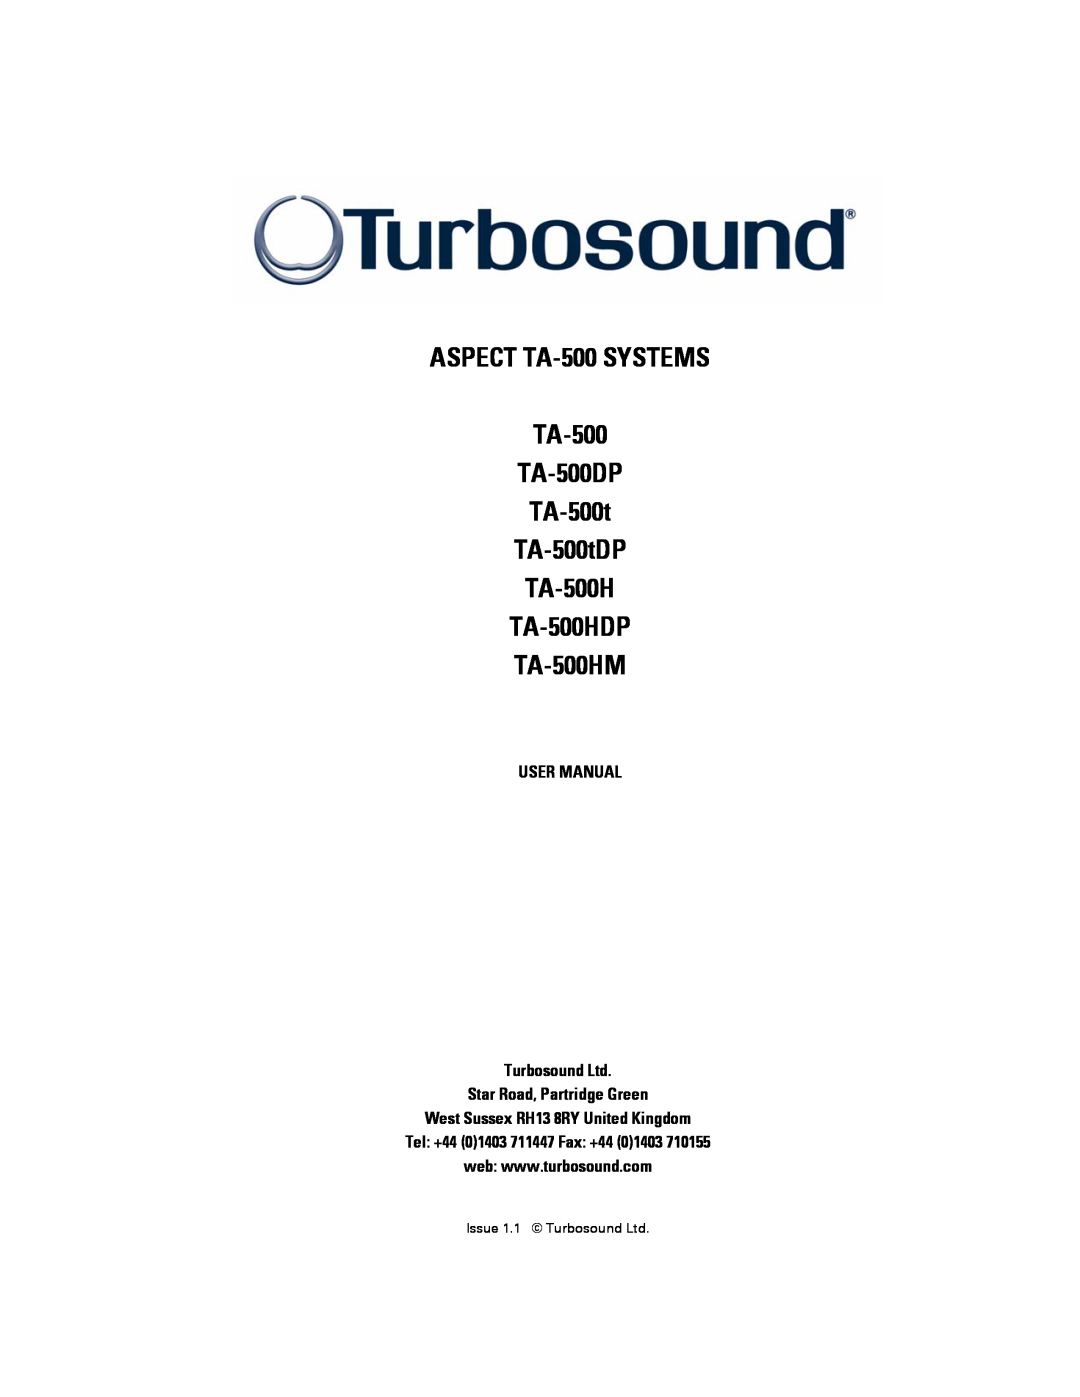 Turbosound TA-500TDP, TA-500HDP, TA-500DP user manual Star Road, Partridge Green, West Sussex RH13 8RY United Kingdom 